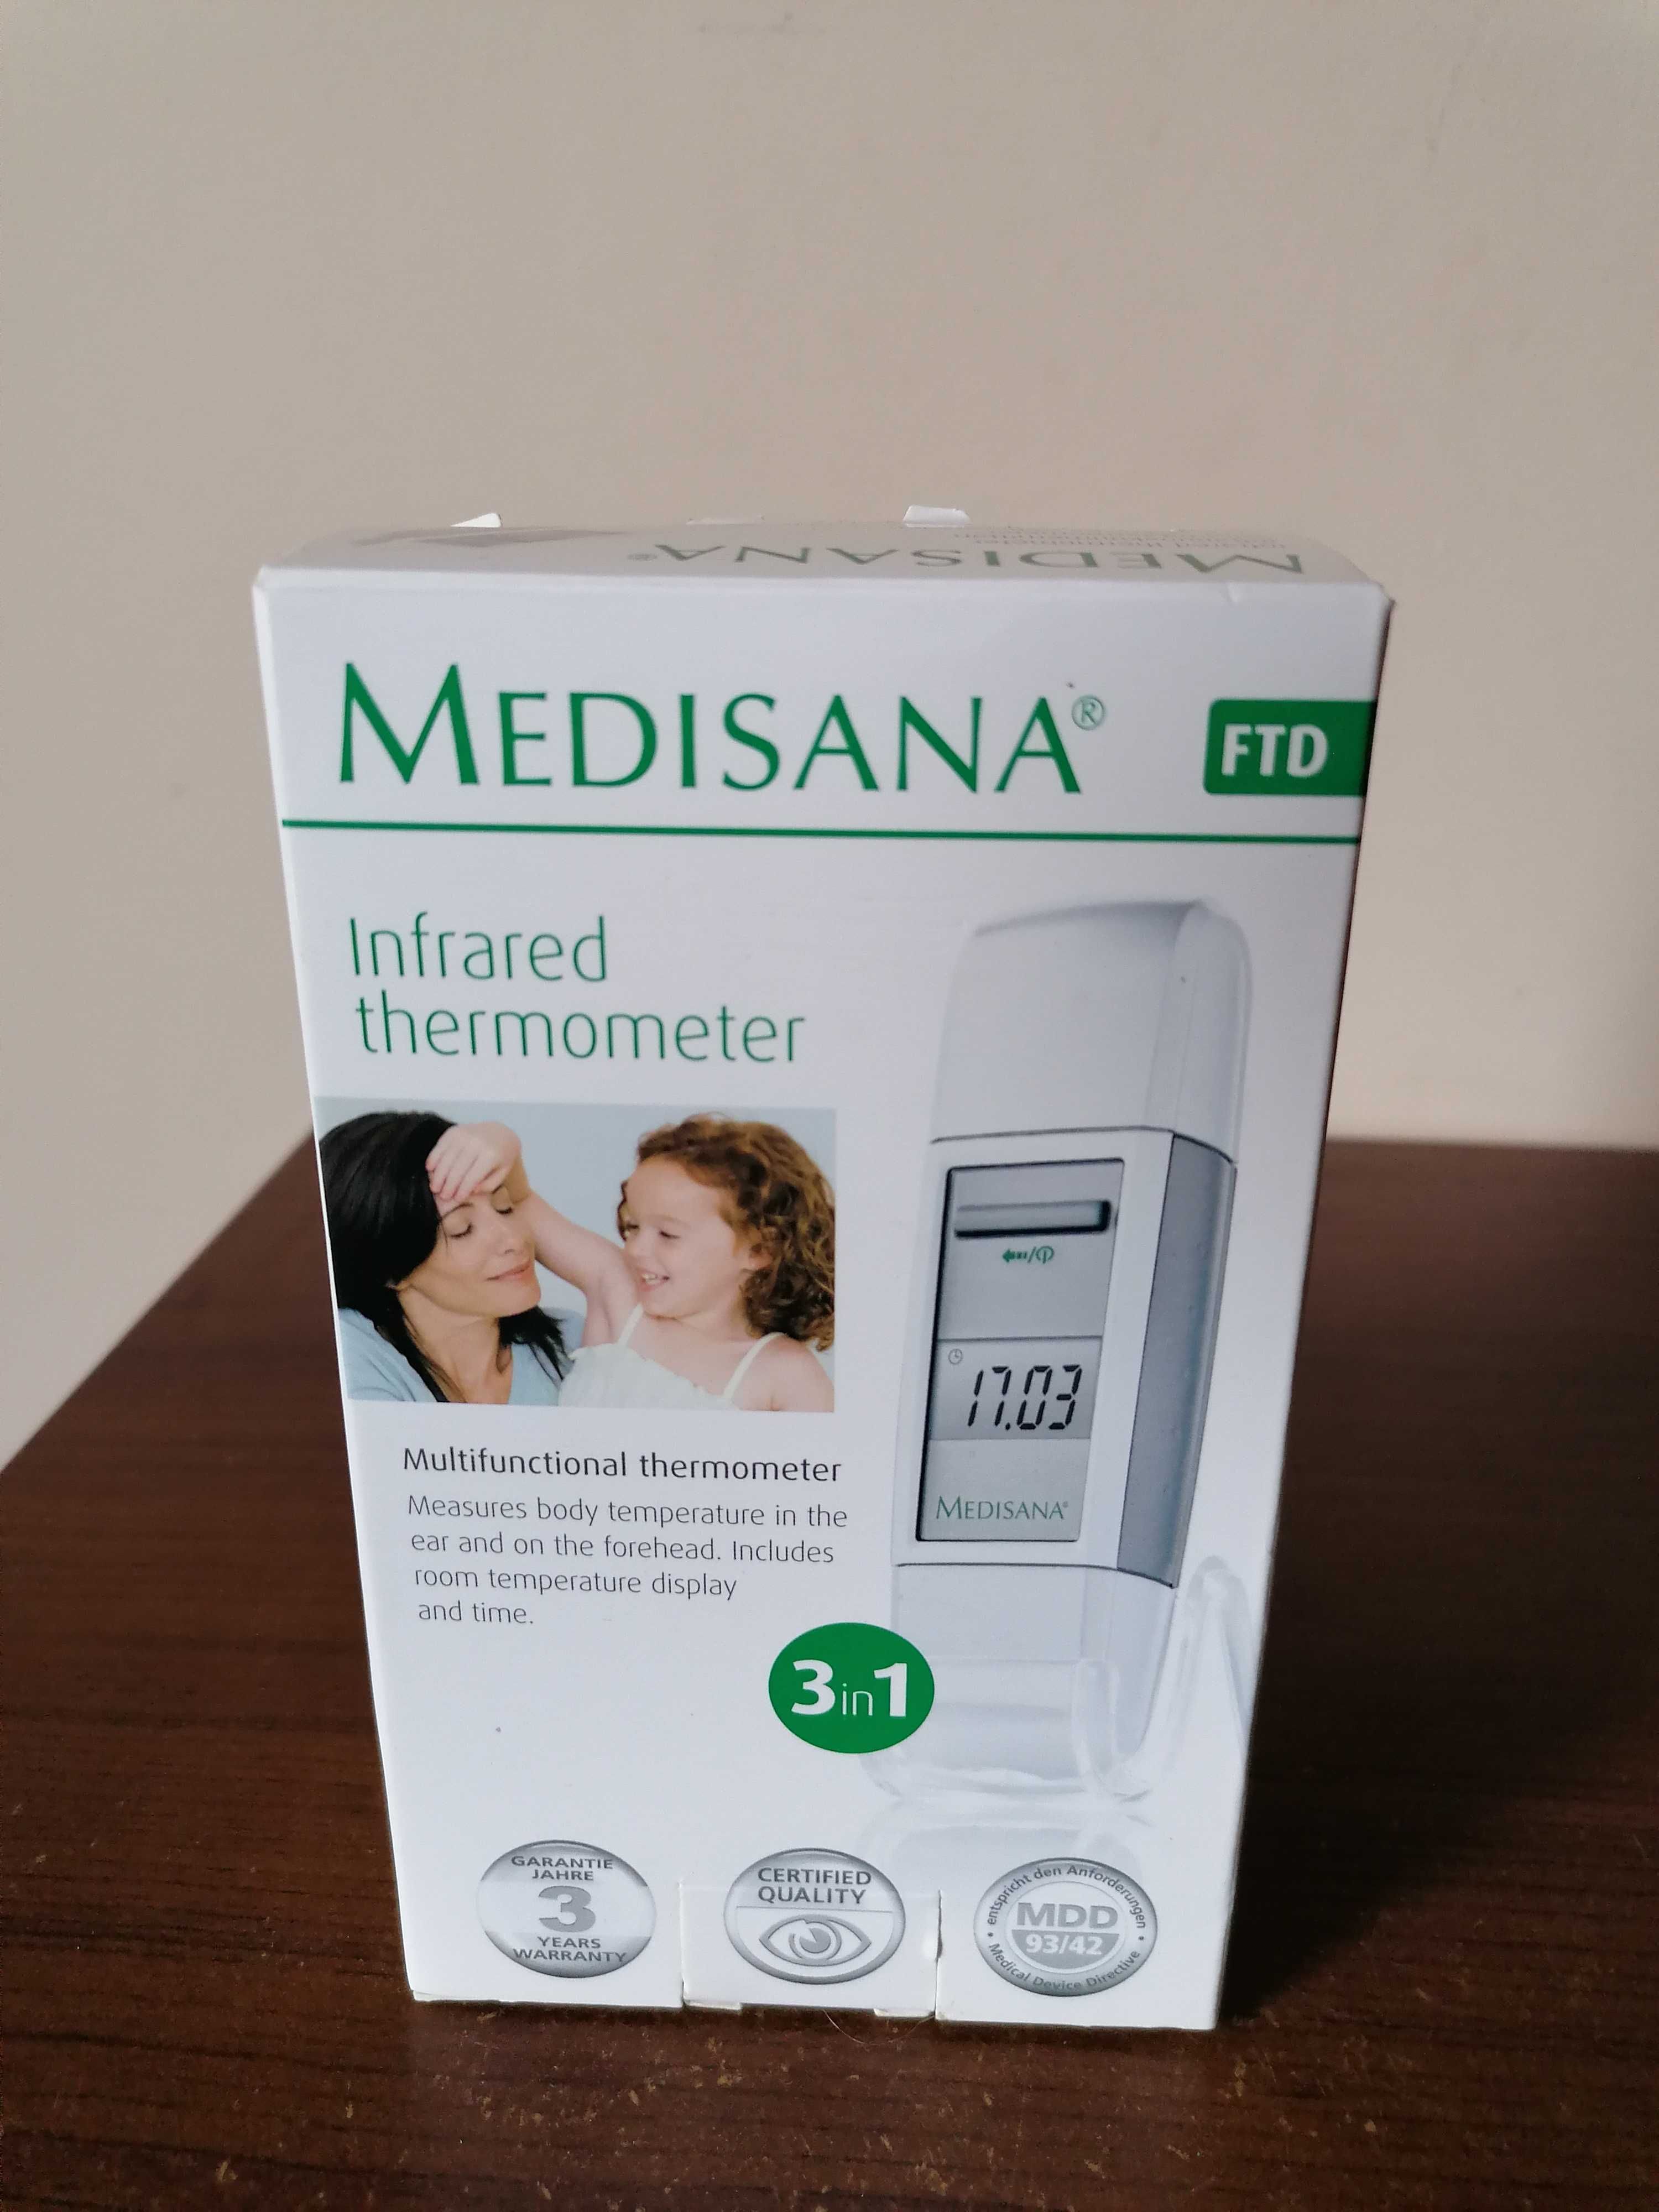 Bezdotykowy termometr "Medisana" w pudełku